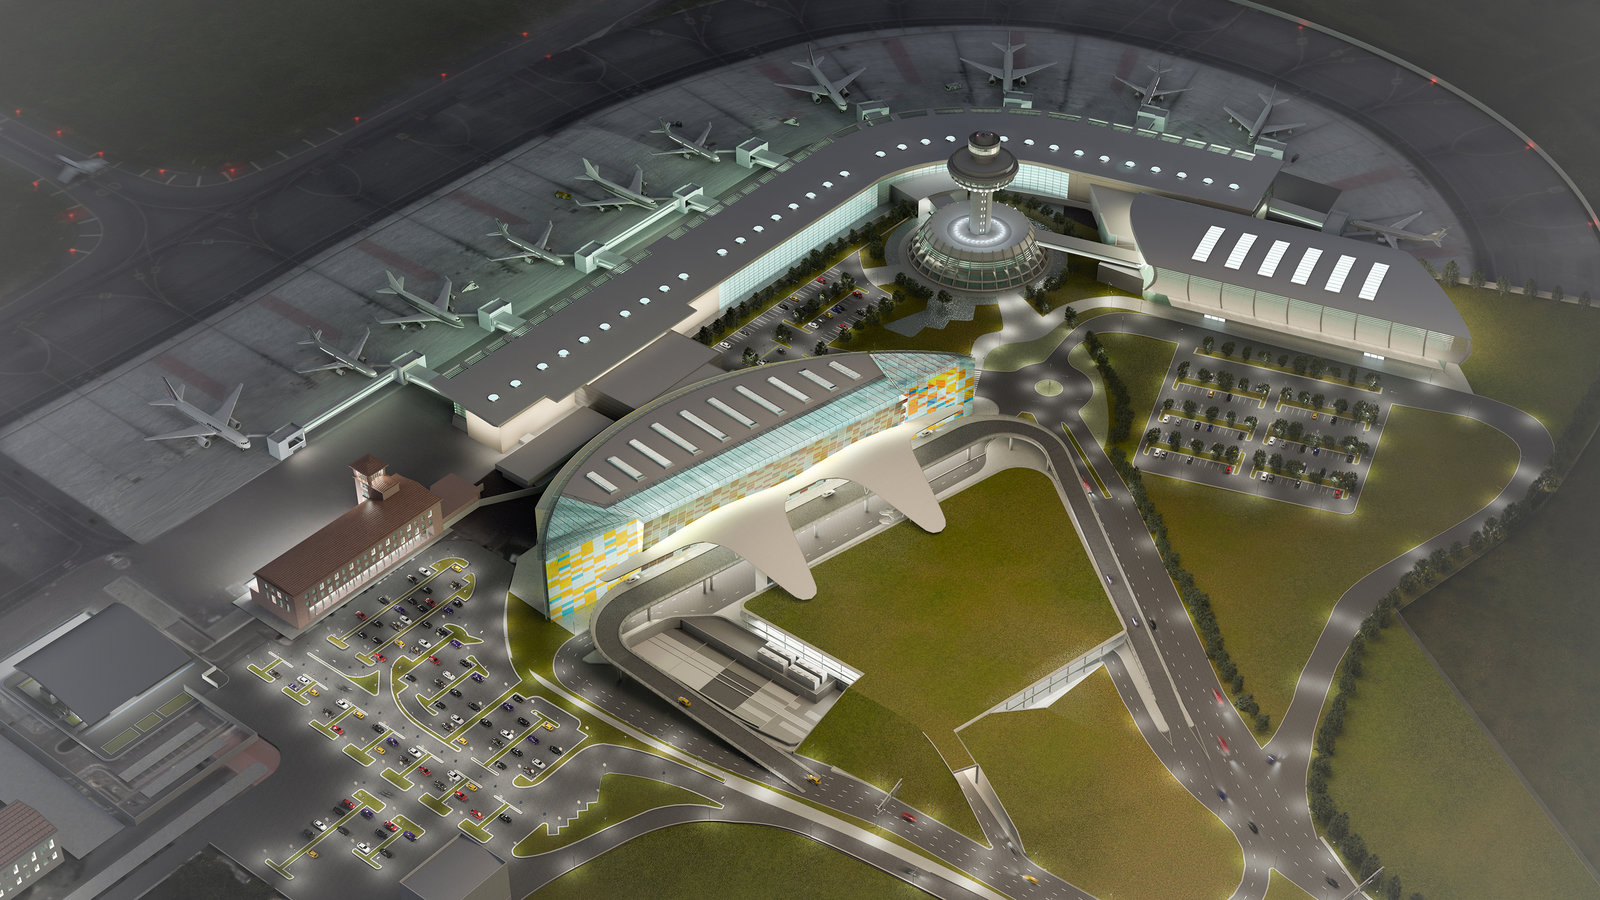 Аэропорт звартноц сайт. Международный аэропорт Ереван Звартноц. Аэропорт Еревана Звартноц новый терминал. Аэропорт Звартноц в Ереване план. Аэропорт в Ереване Звартноц 2021.